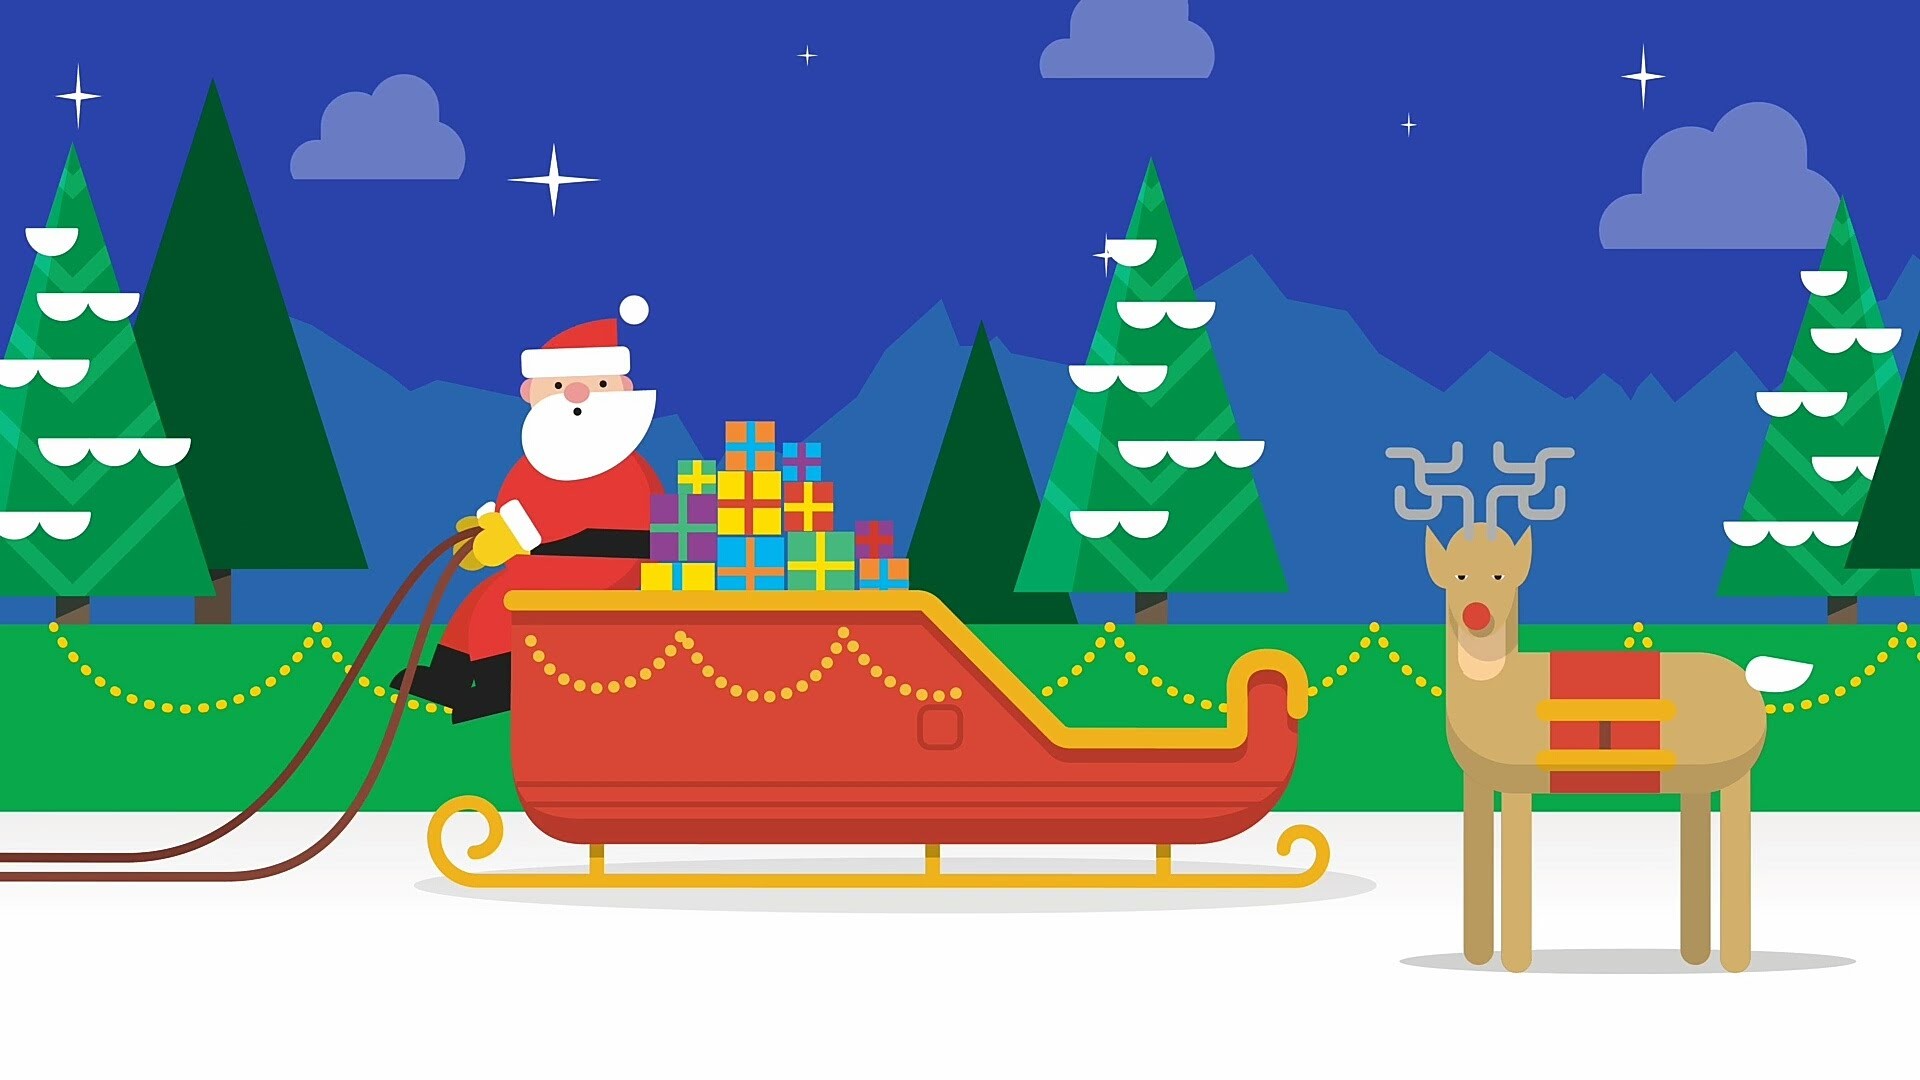 Google добавила новую мини-игру в «Радар Санта-Клауса» специально для Android